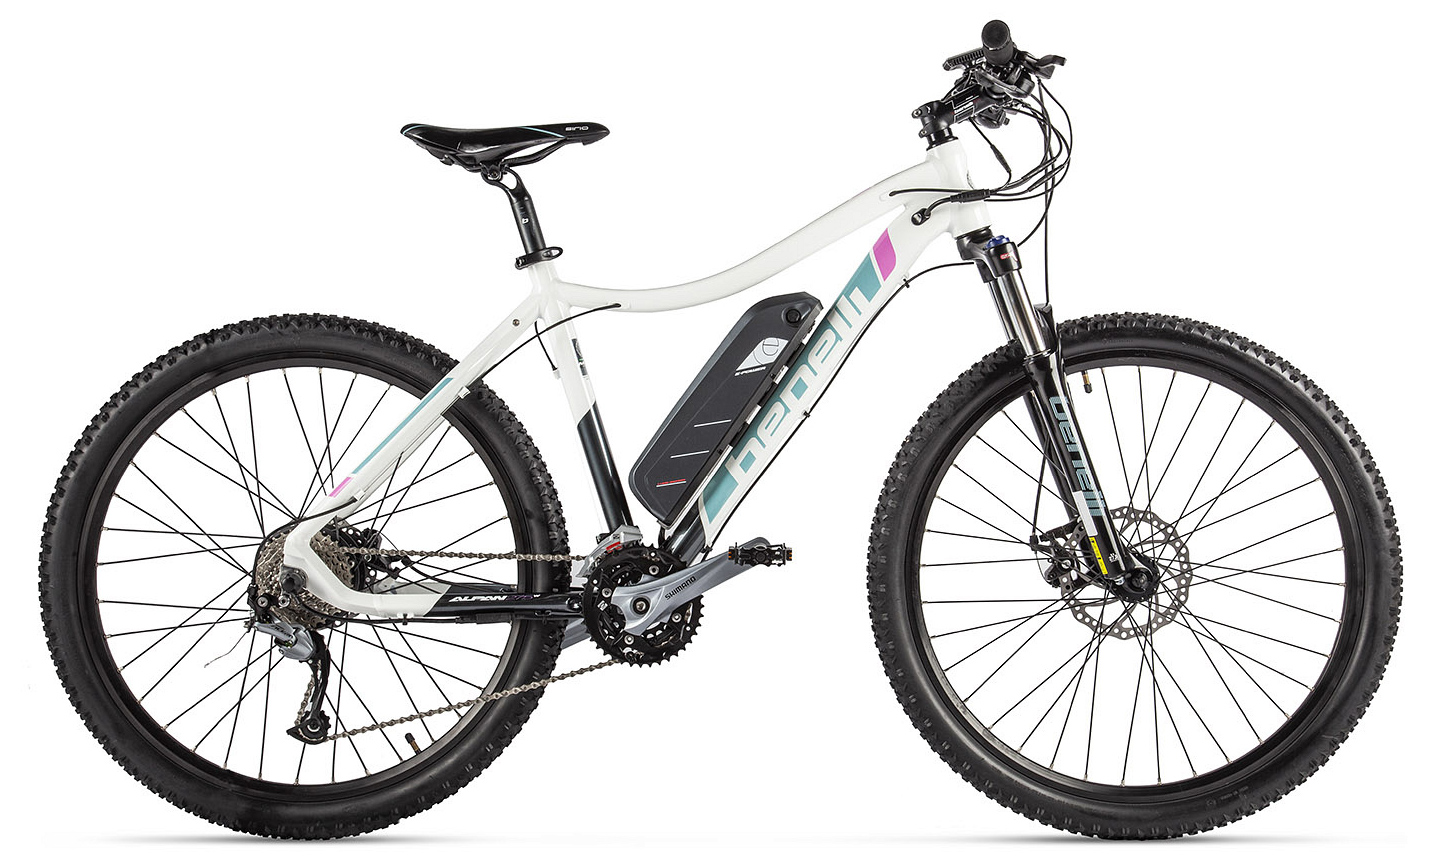  Отзывы о Электровелосипеде Benelli Alpan W 27.5 STD 14A/h, с ручкой газа 2019